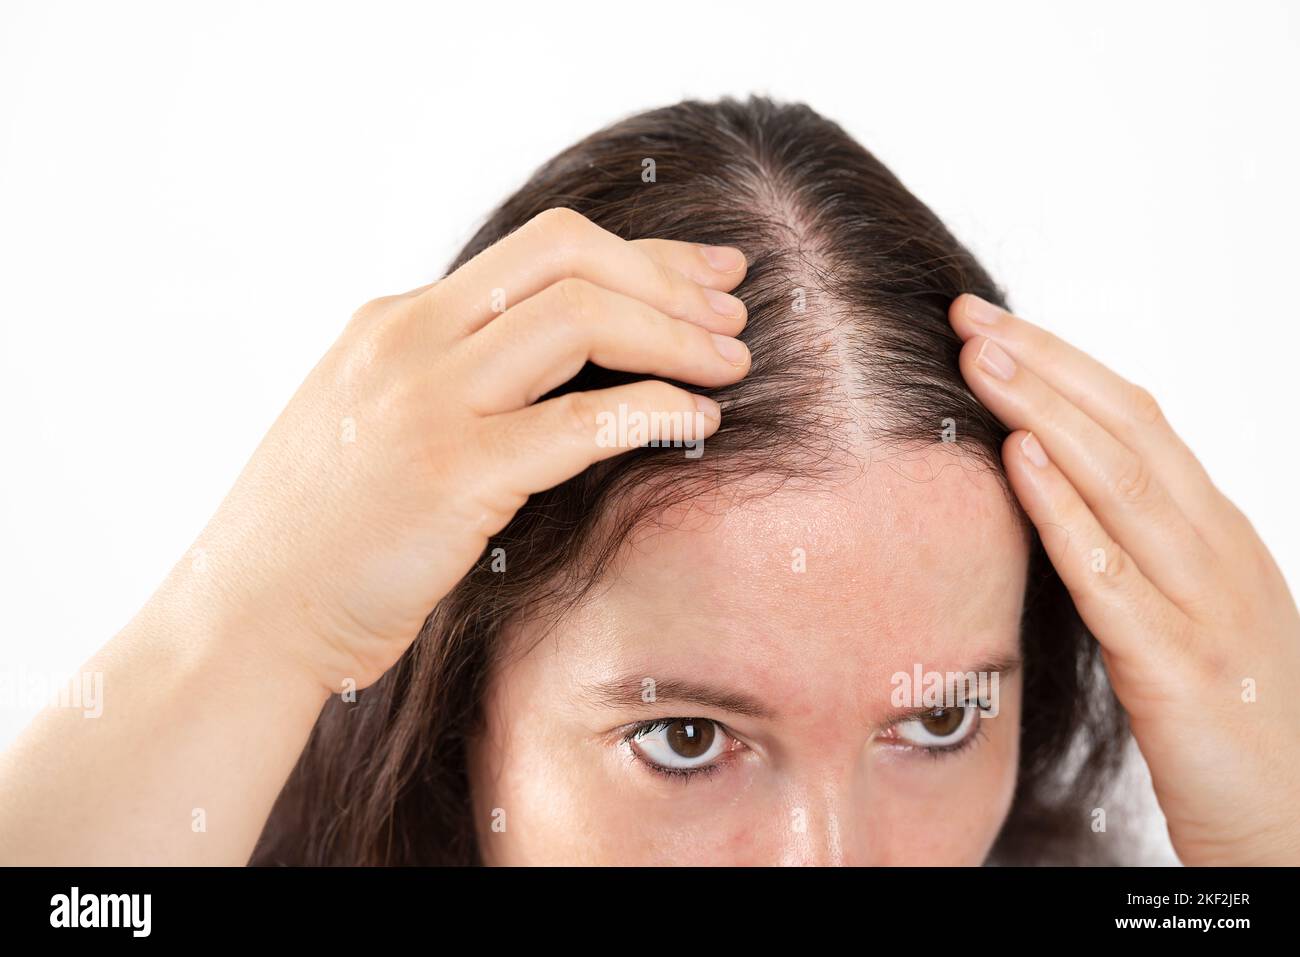 close up of woman controls hair loss Stock Photo